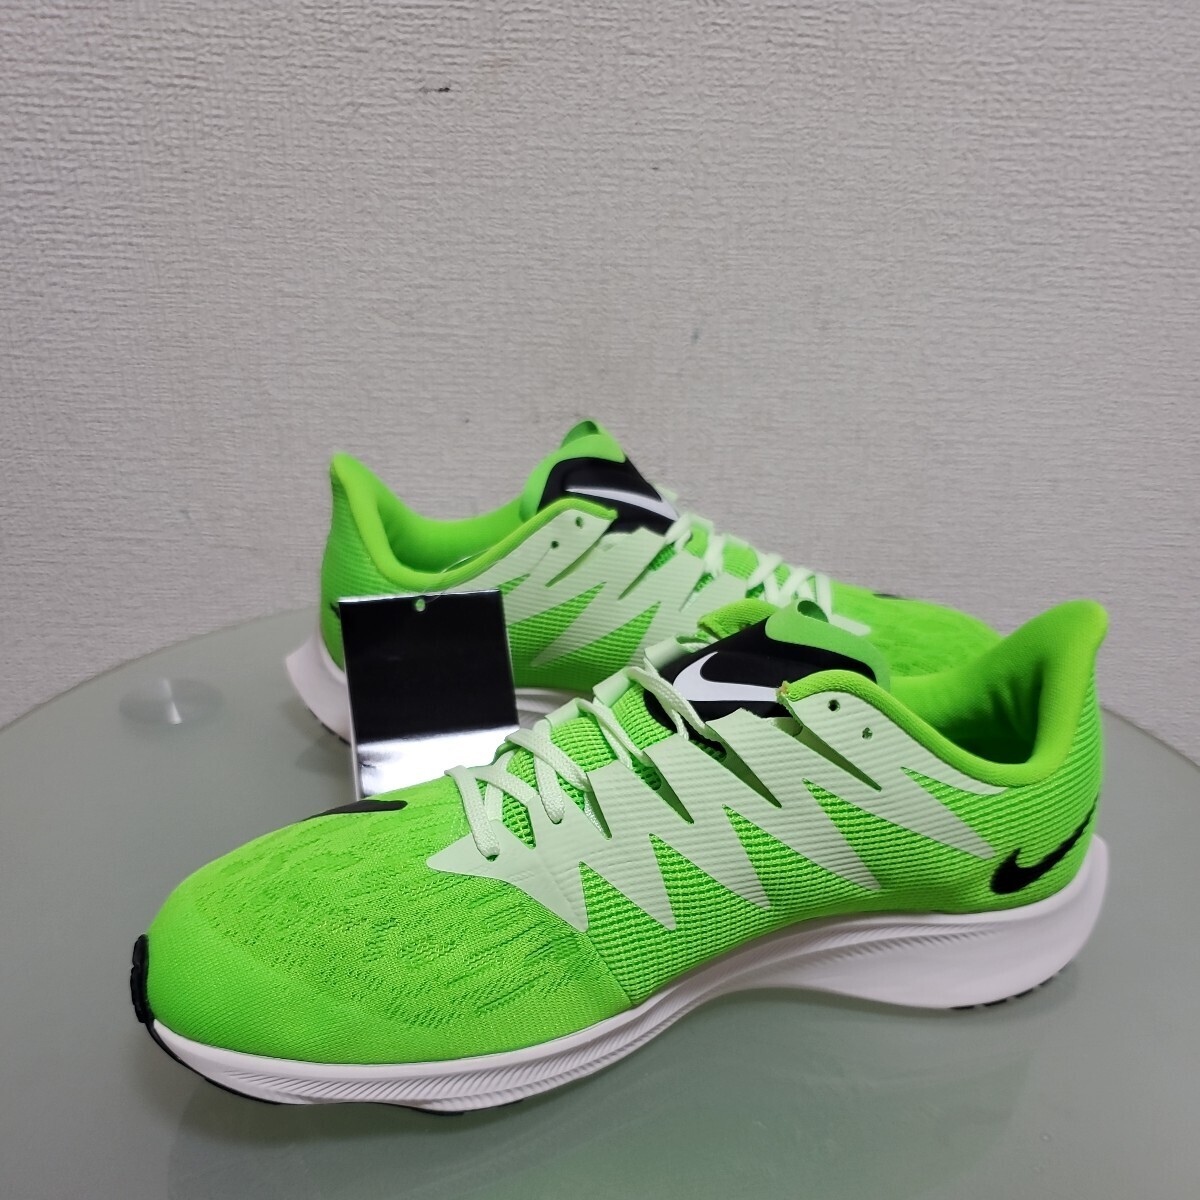 NIKE Nike ZOOM RIVAL FLY zoom соперник fly бег обувь спортивные туфли 26.5. зеленый новый товар не использовался дом хранение товар легкий 